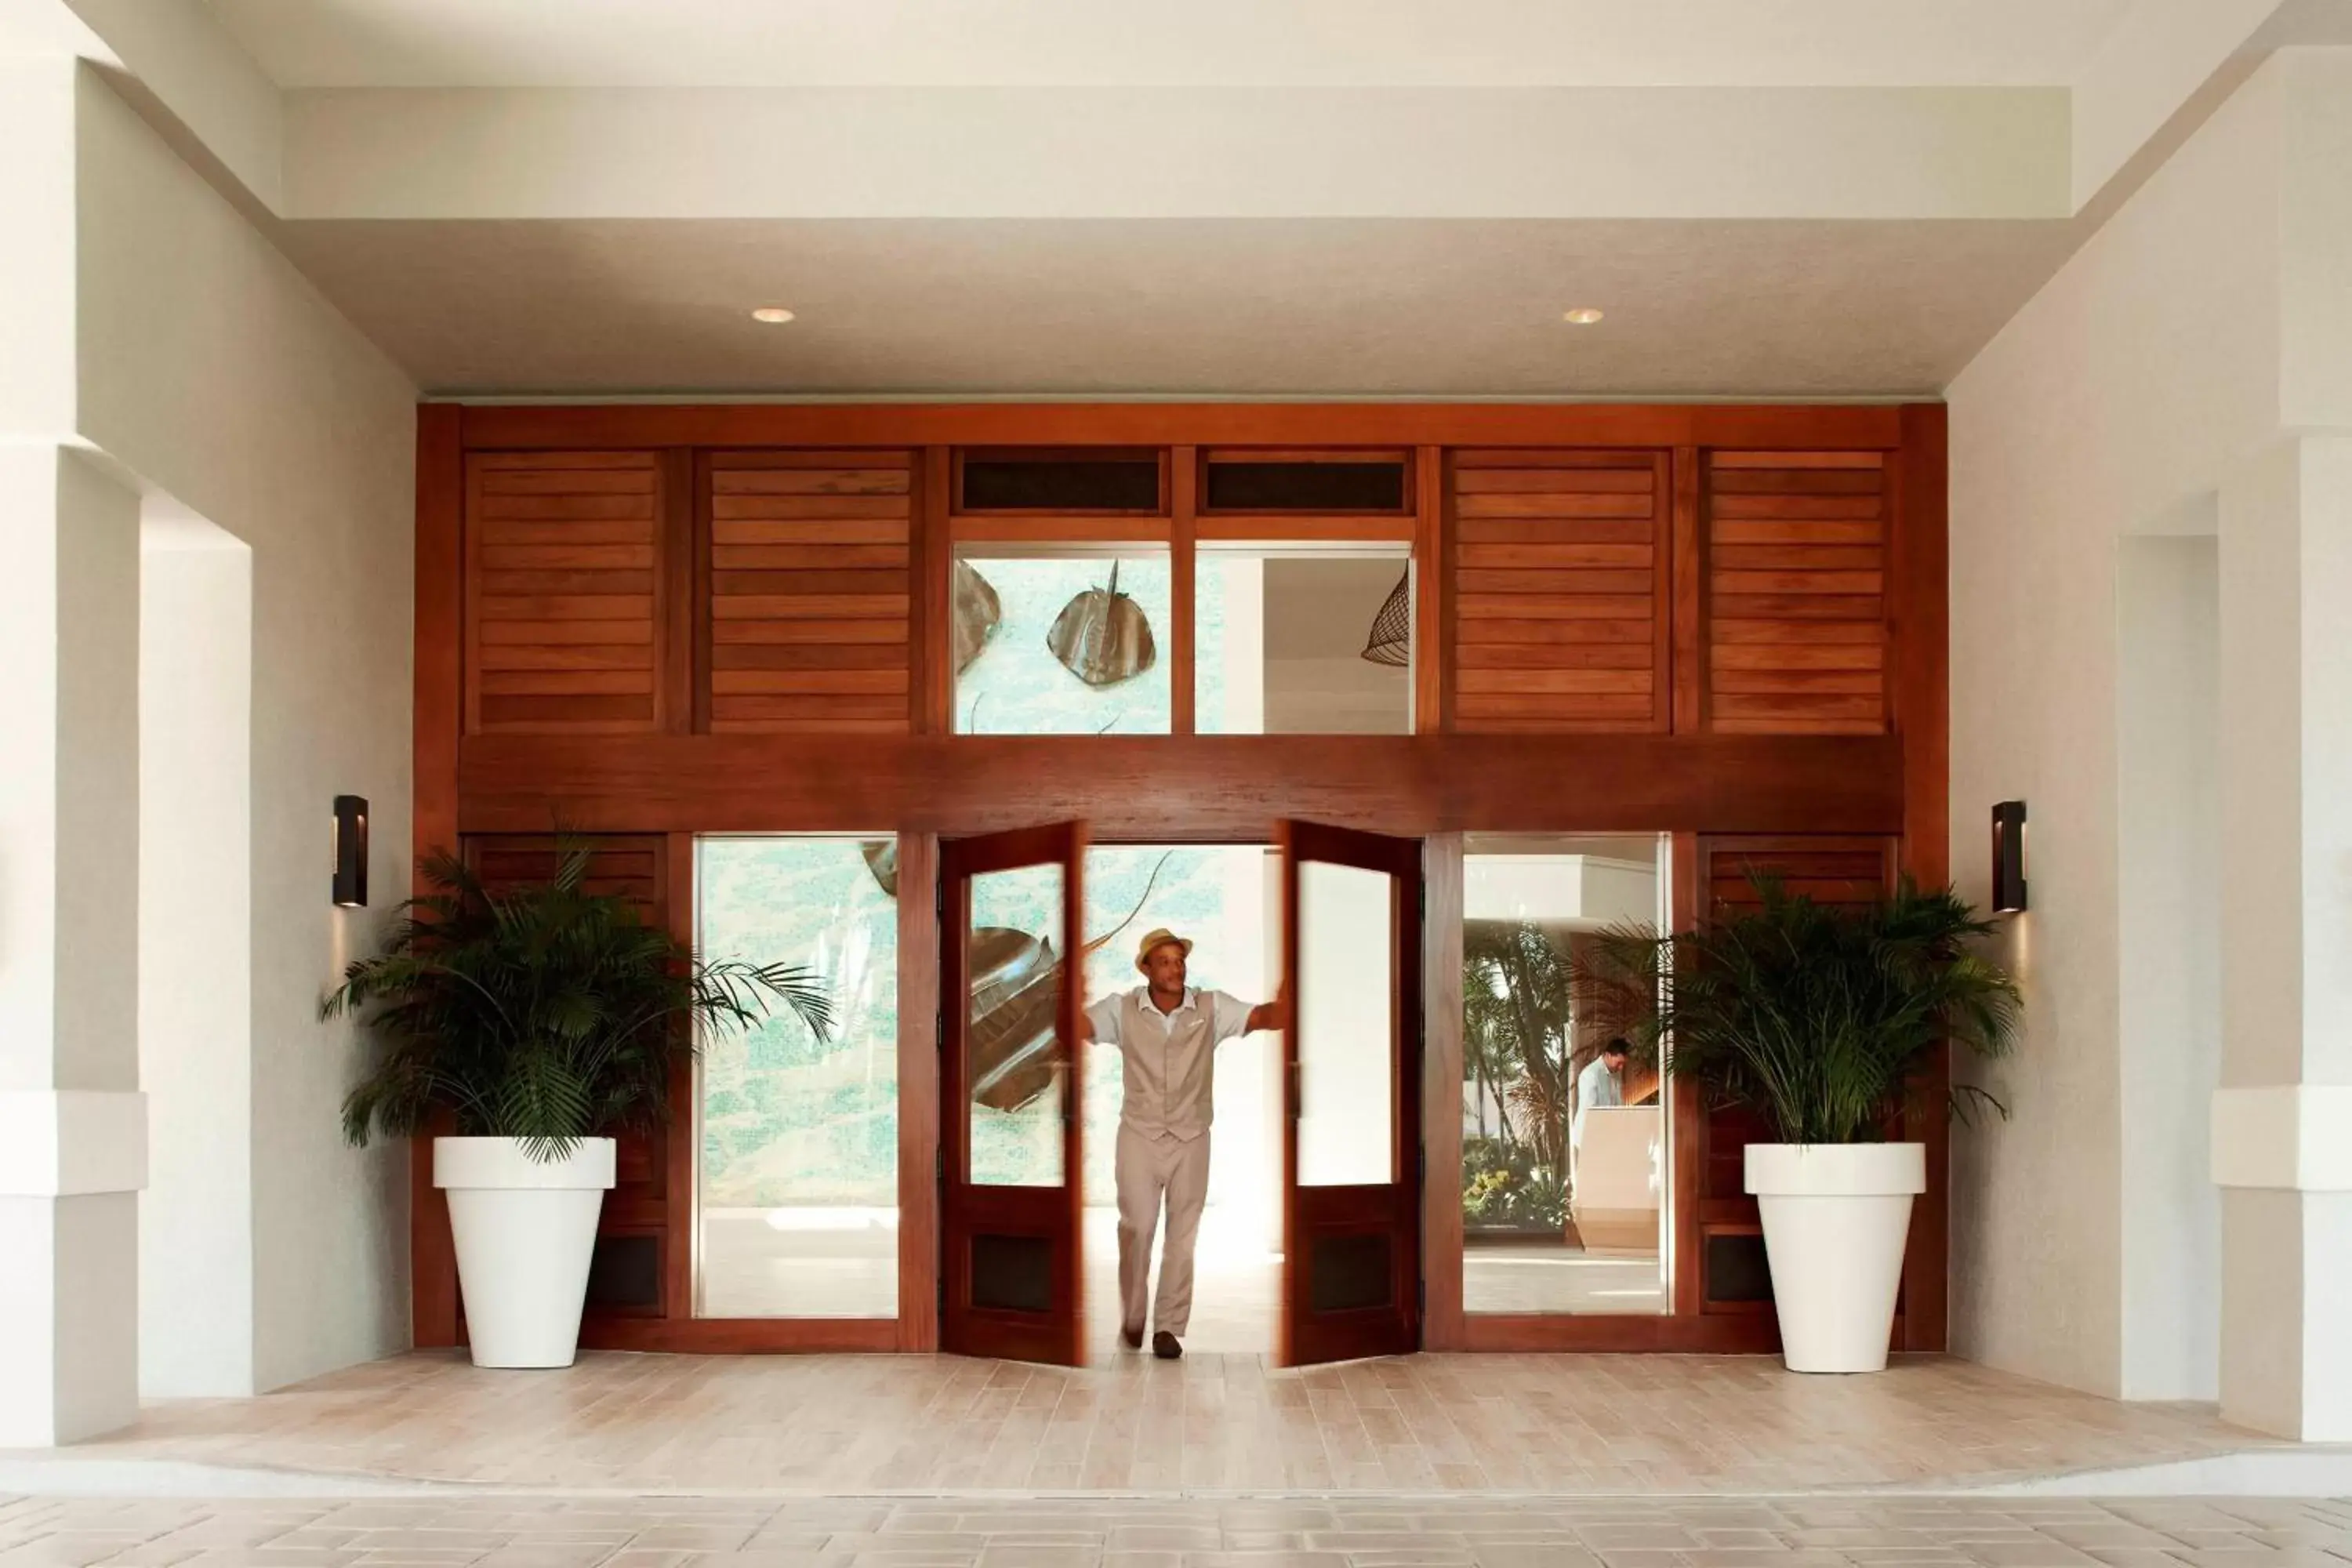 Property building in Grand Cayman Marriott Resort